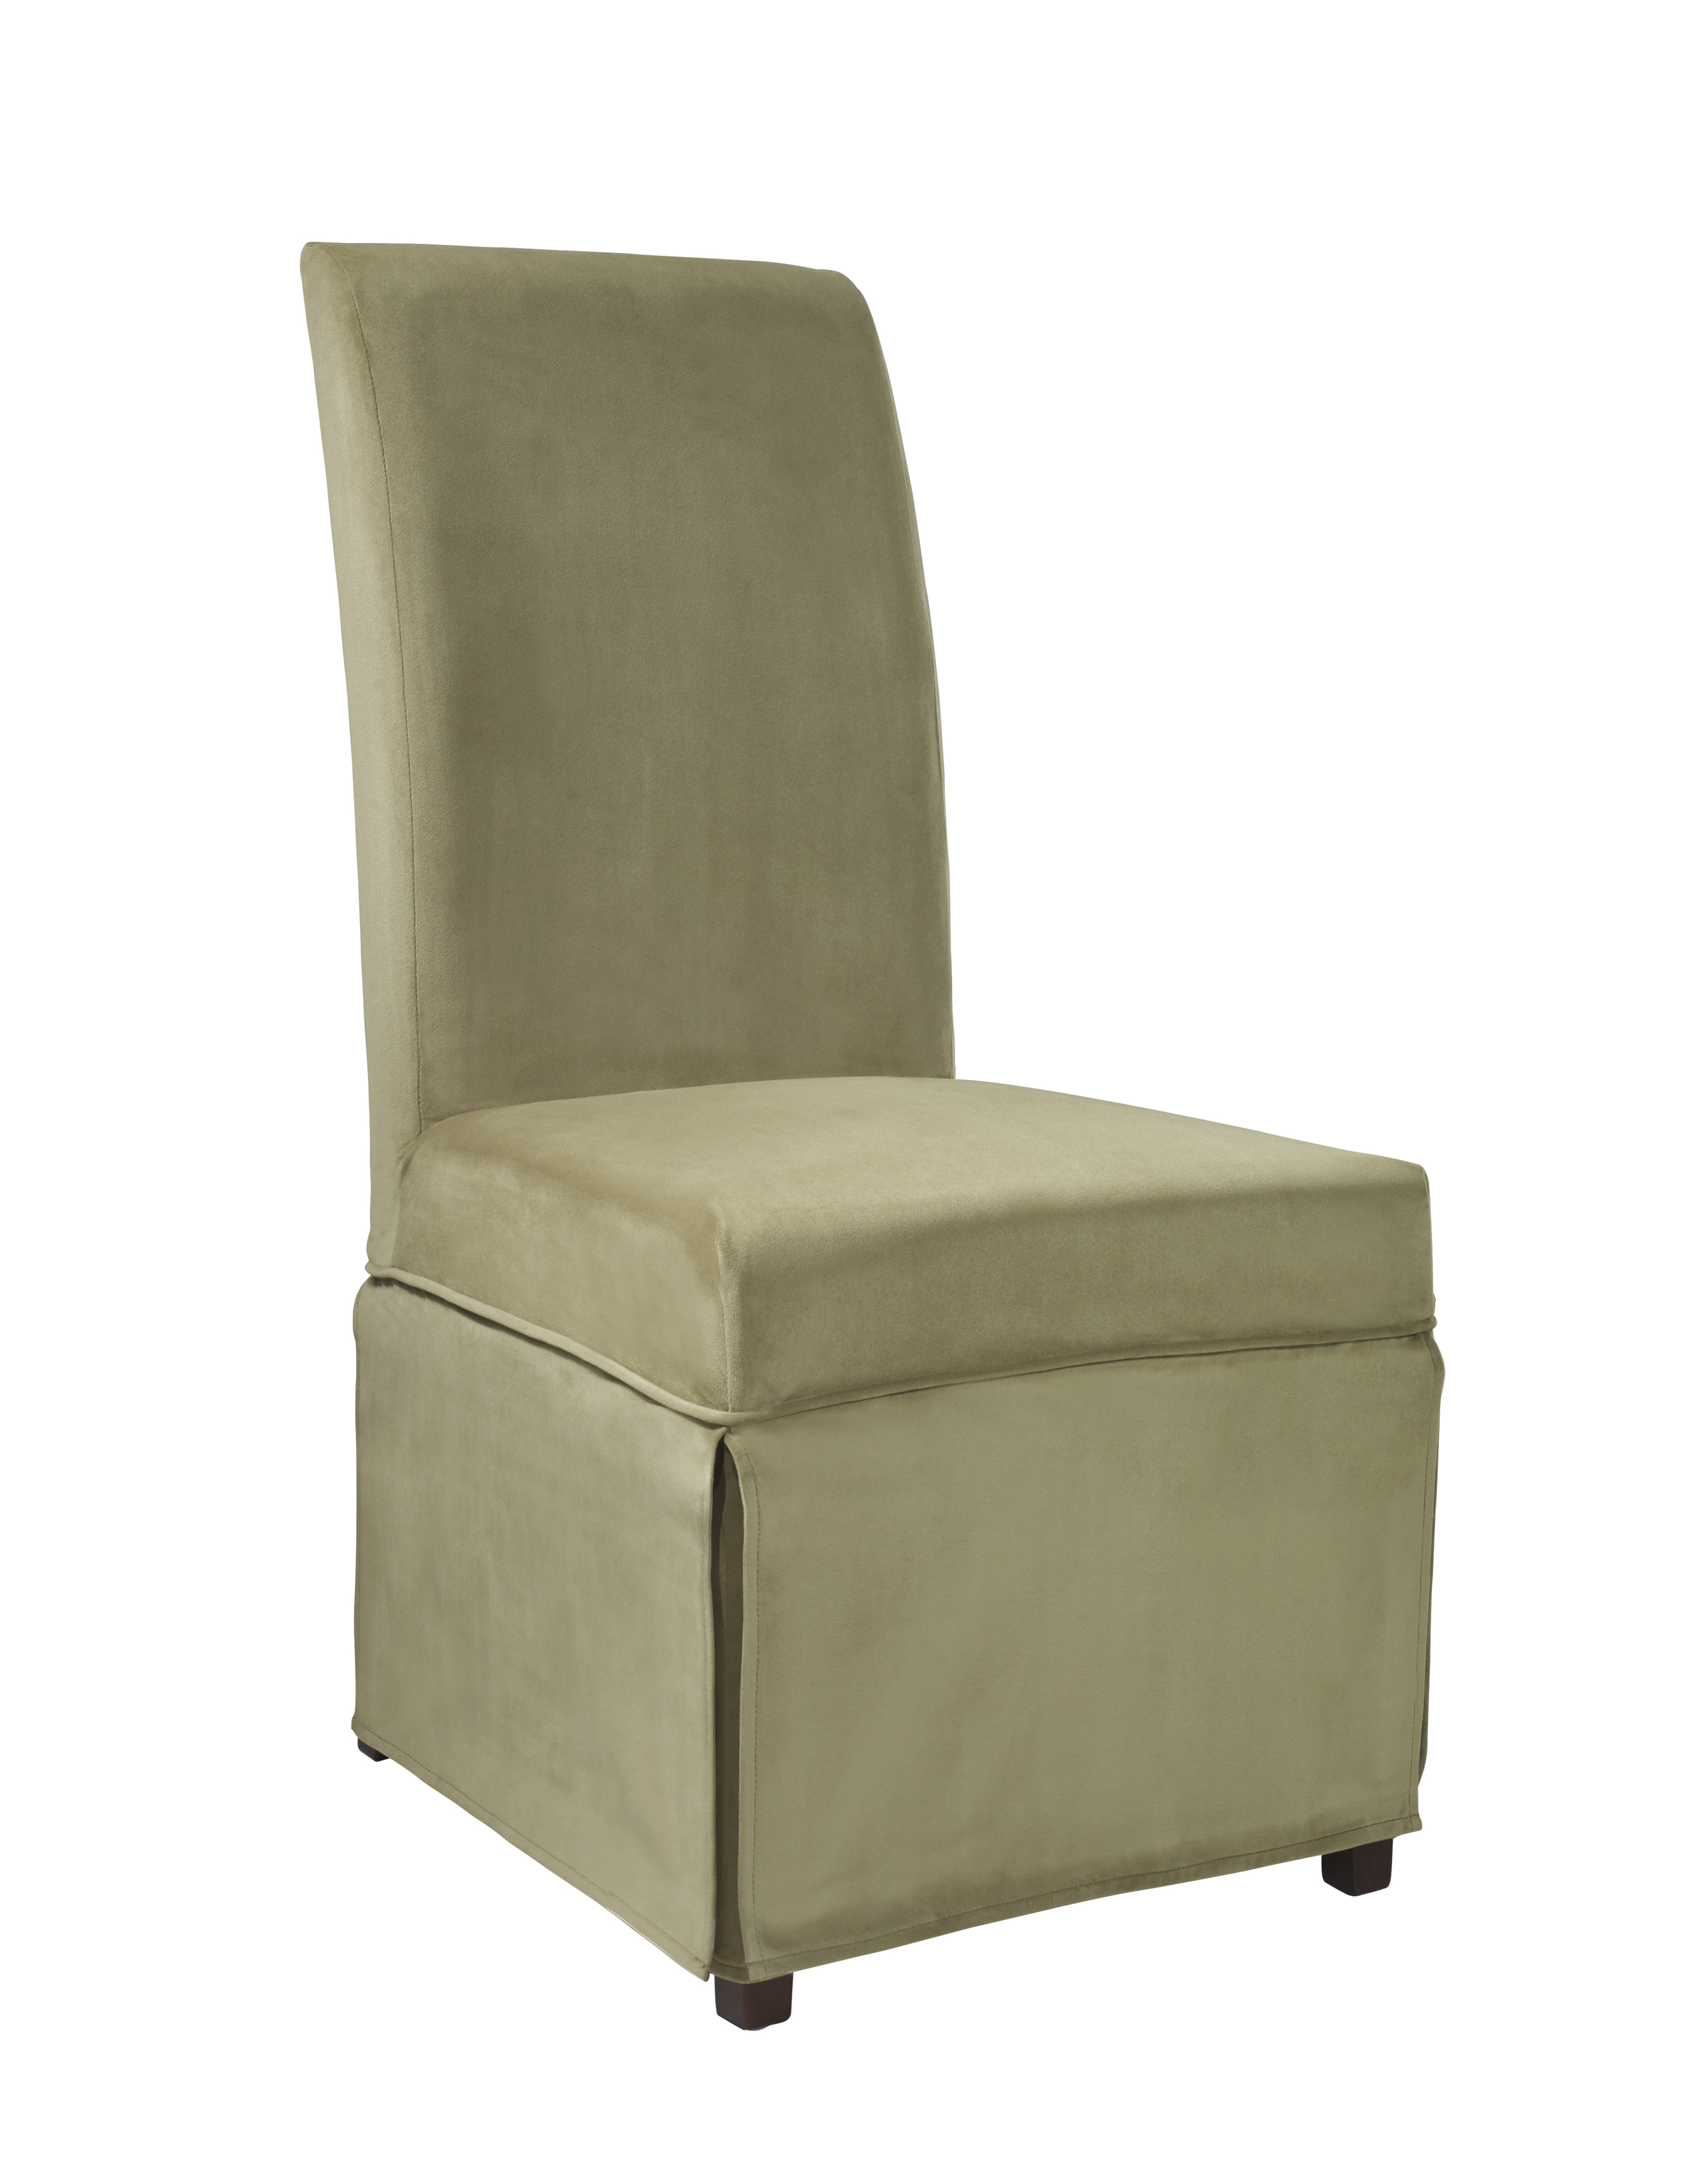 parson chair covers